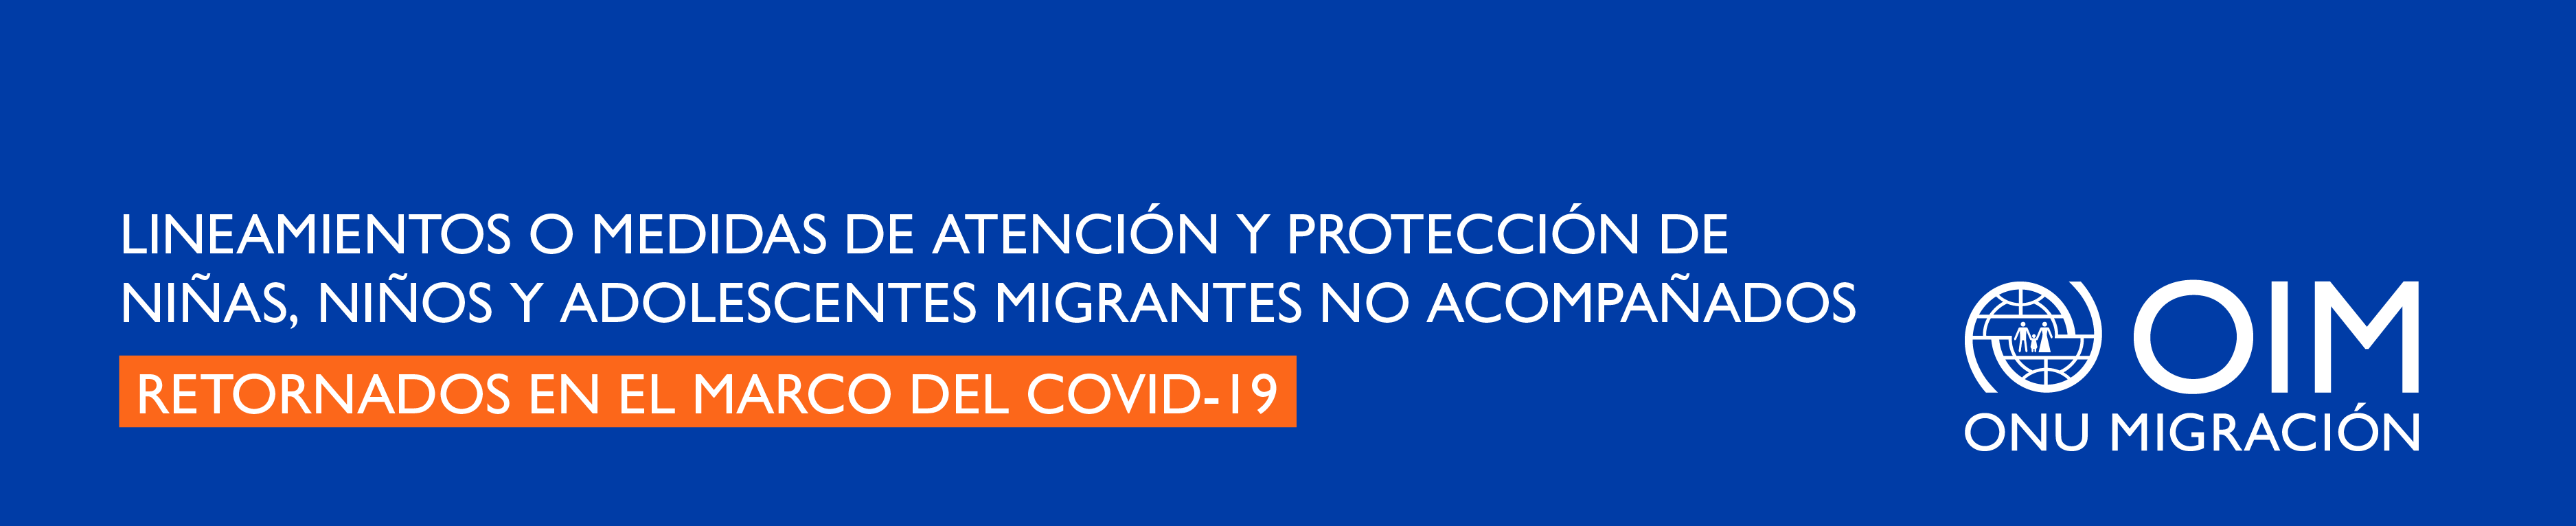 Lineamientos o medidas de atención y protección de niñas, niños y adolescentes migrantes no acompañados retornados en el marco del COVID-19